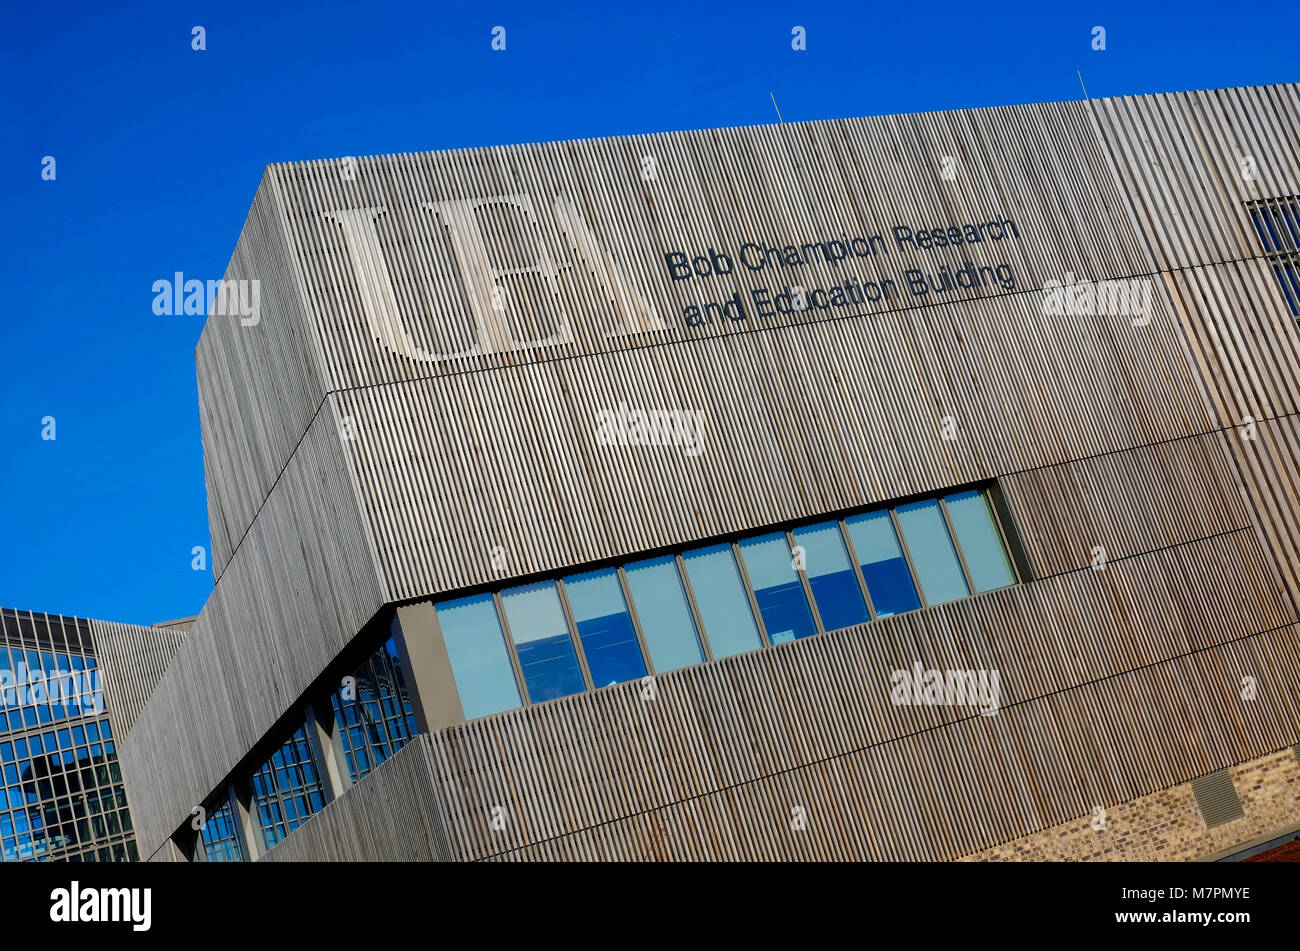 Die Bob champion Forschung und Bildung Gebäude, UEA, Norwich, Norfolk, England Stockfoto